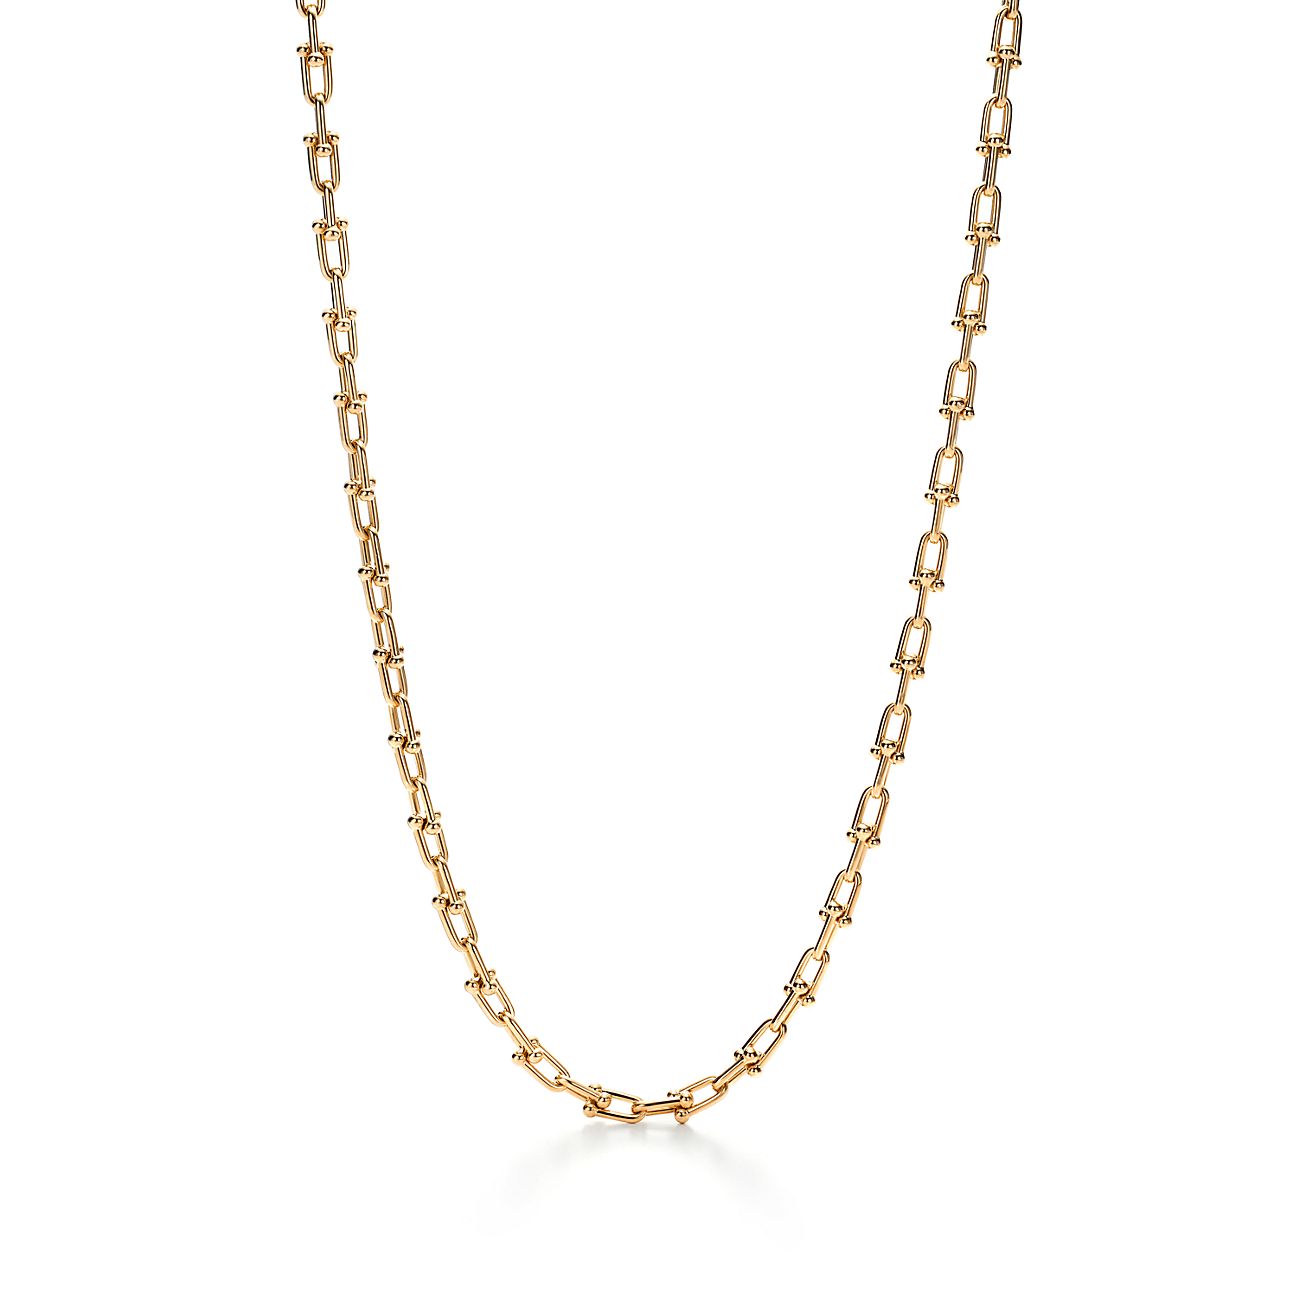 Tiffany HardWear link necklace in 18k gold.